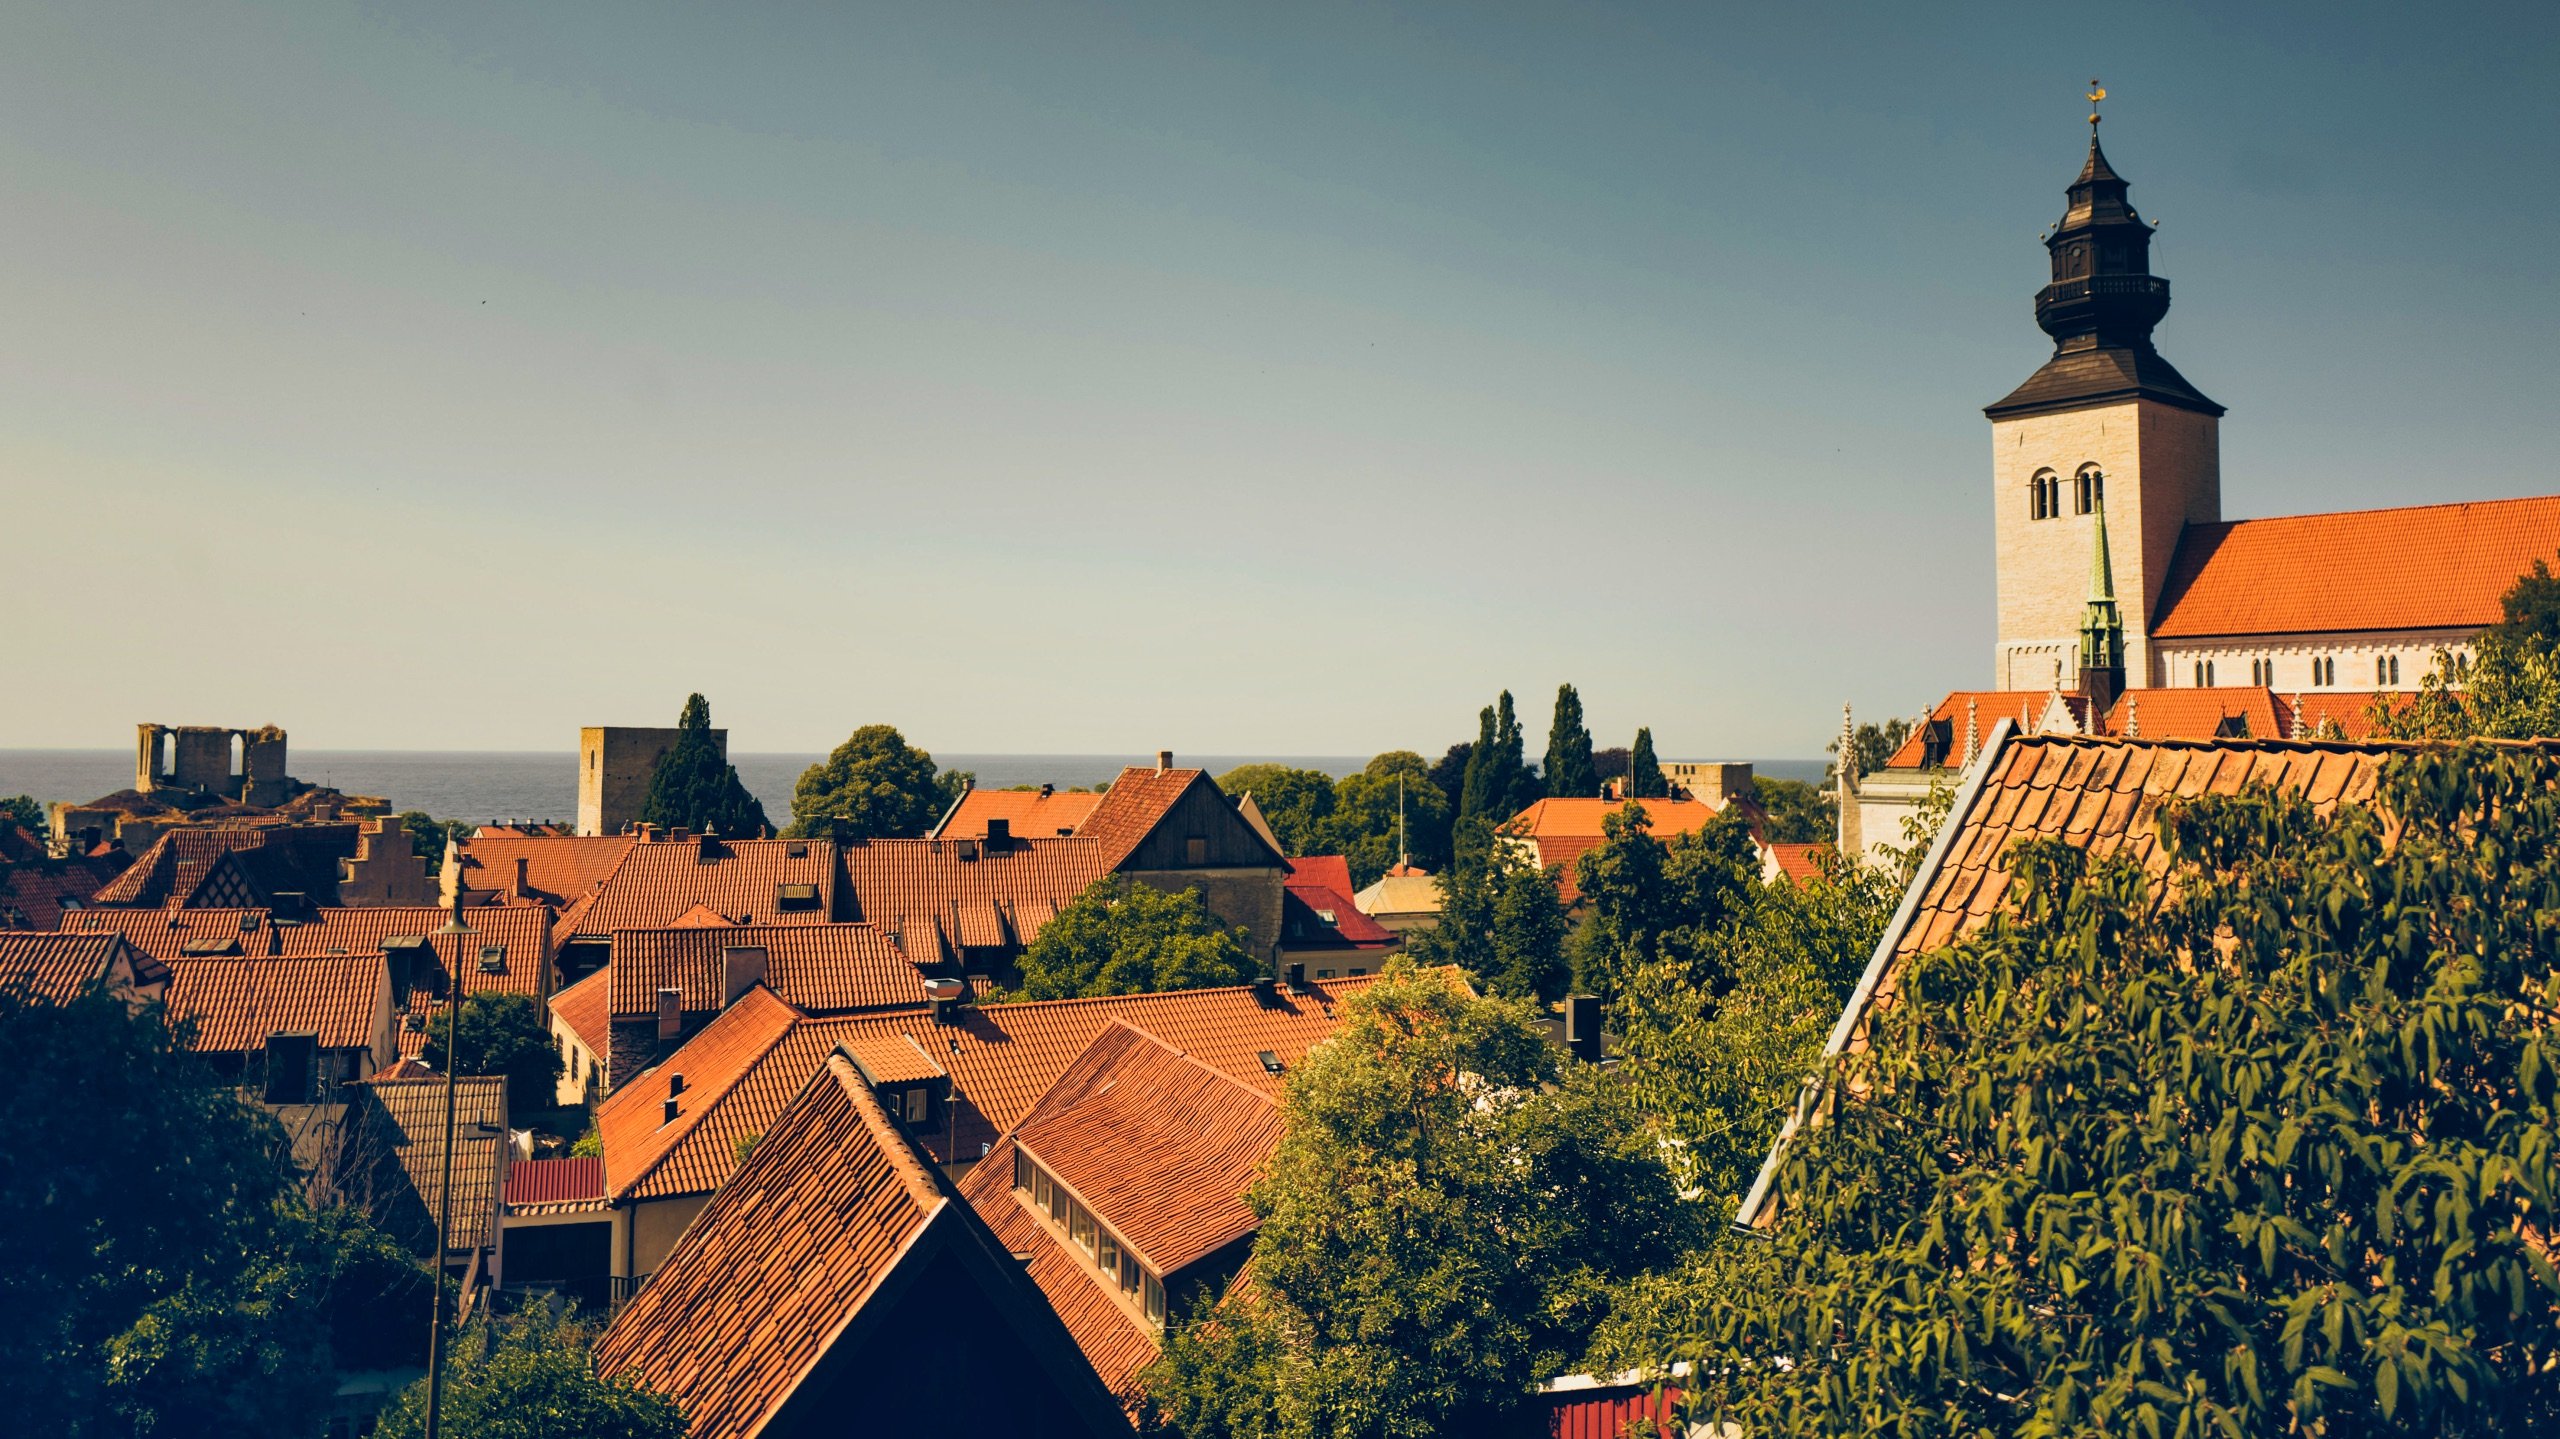 Du visar för närvarande Visby – En vackert belägen muromgärdad medeltidsstad